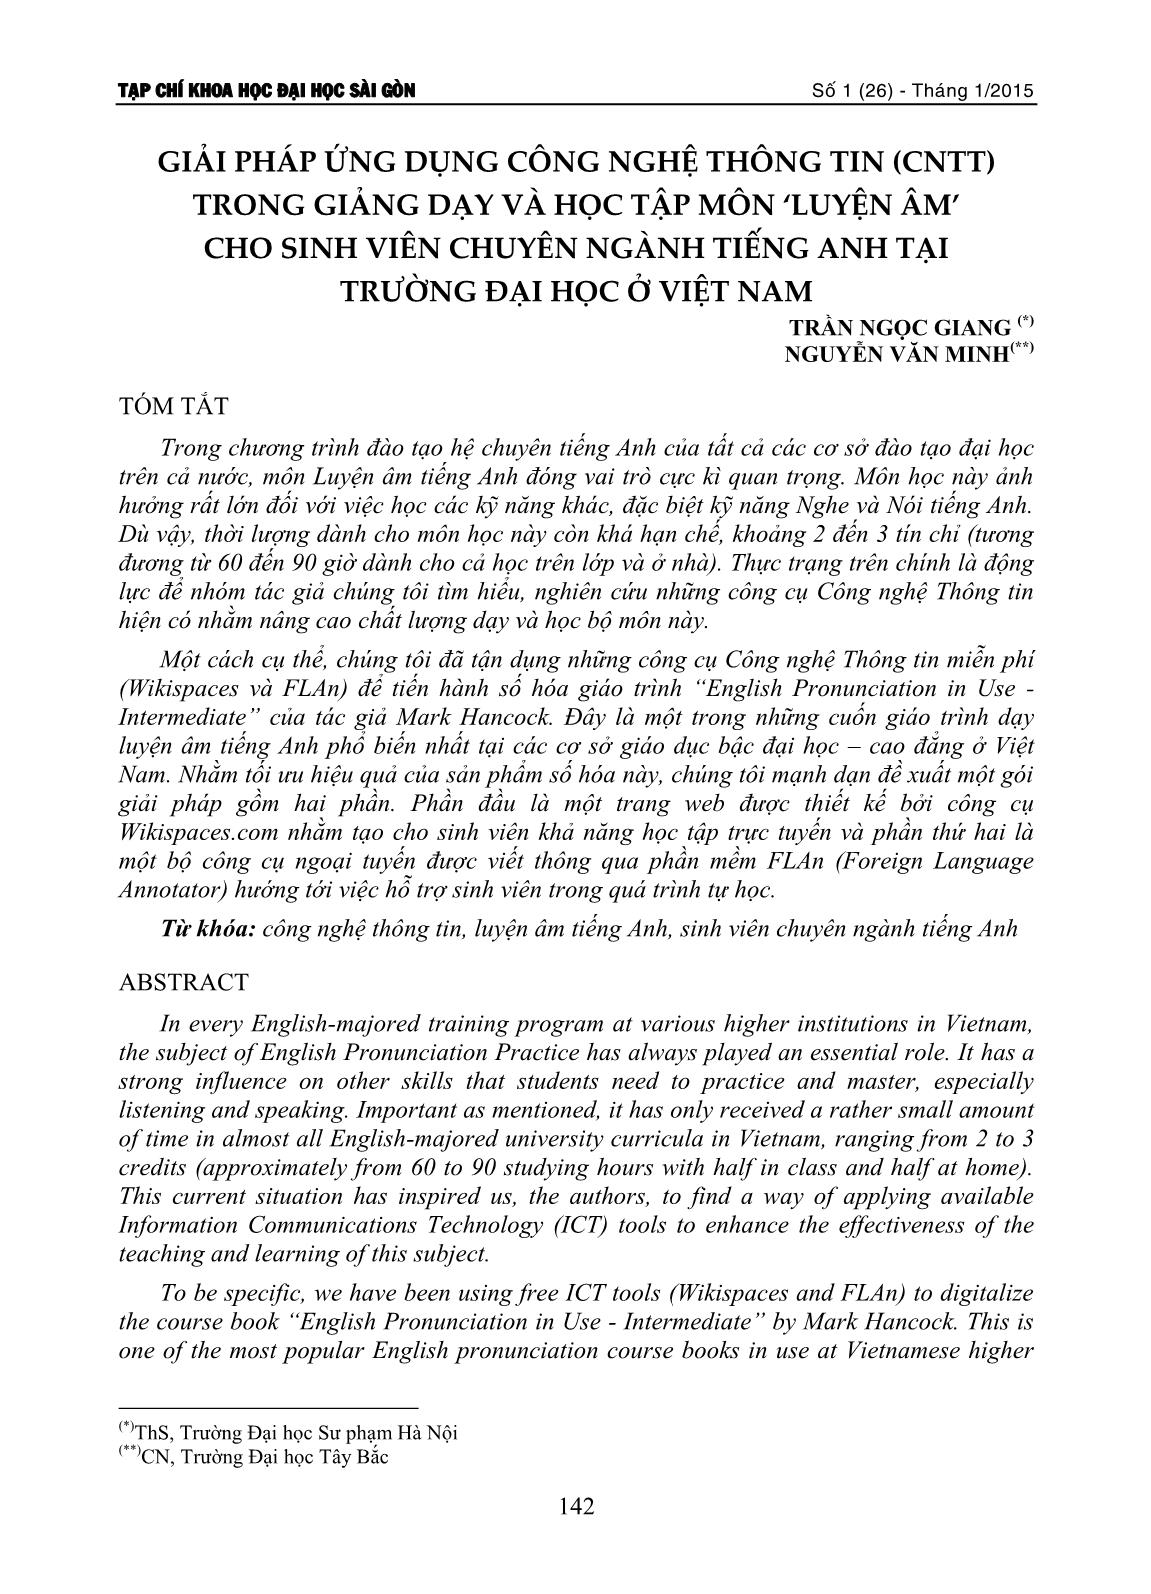 Giải pháp ứng dụng công nghệ thông tin (CNTT) trong giảng dạy và học tập môn Luyện âm cho sinh viên chuyên ngành Tiếng Anh tại trường đại học ở Việt Nam trang 1